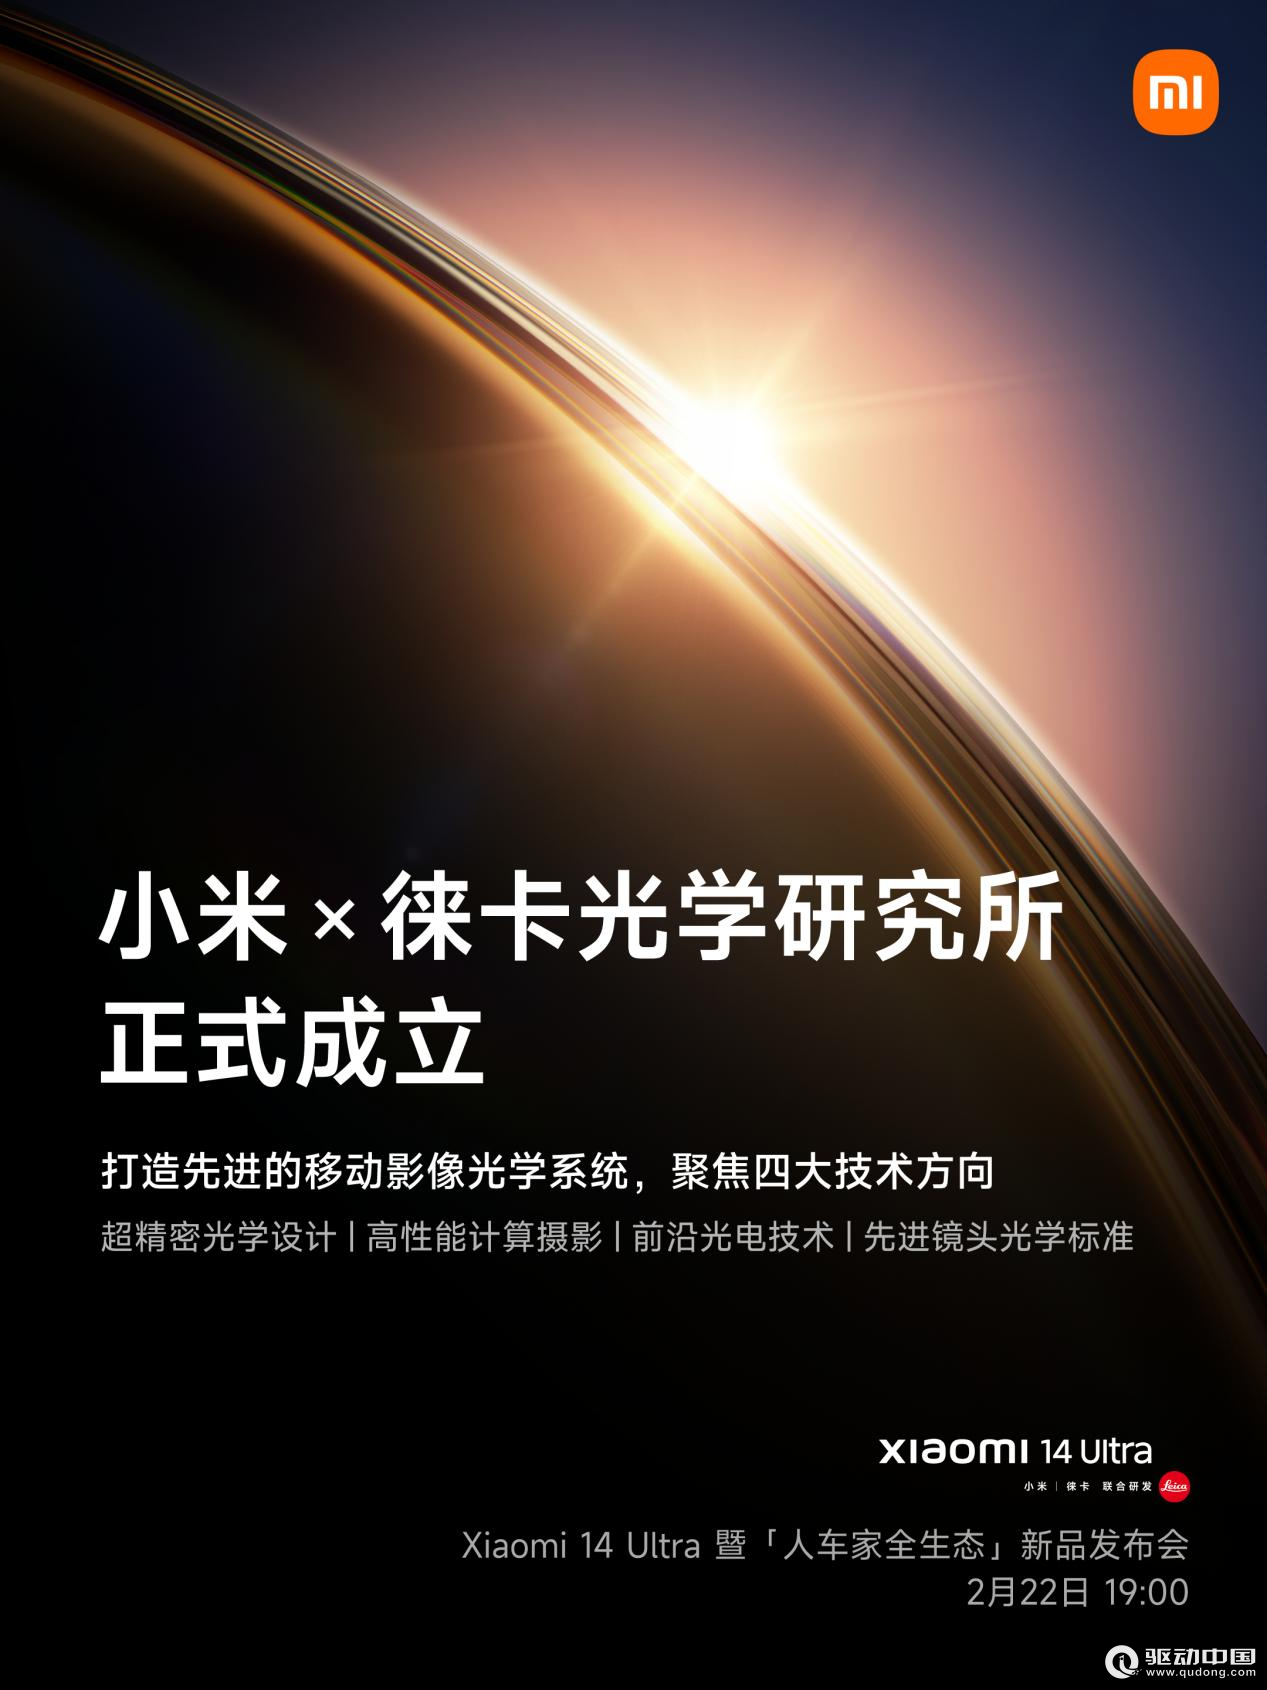 小米×徕卡光学研究所正式成立 全新影像旗舰小米14 Ultra 2月22日发布